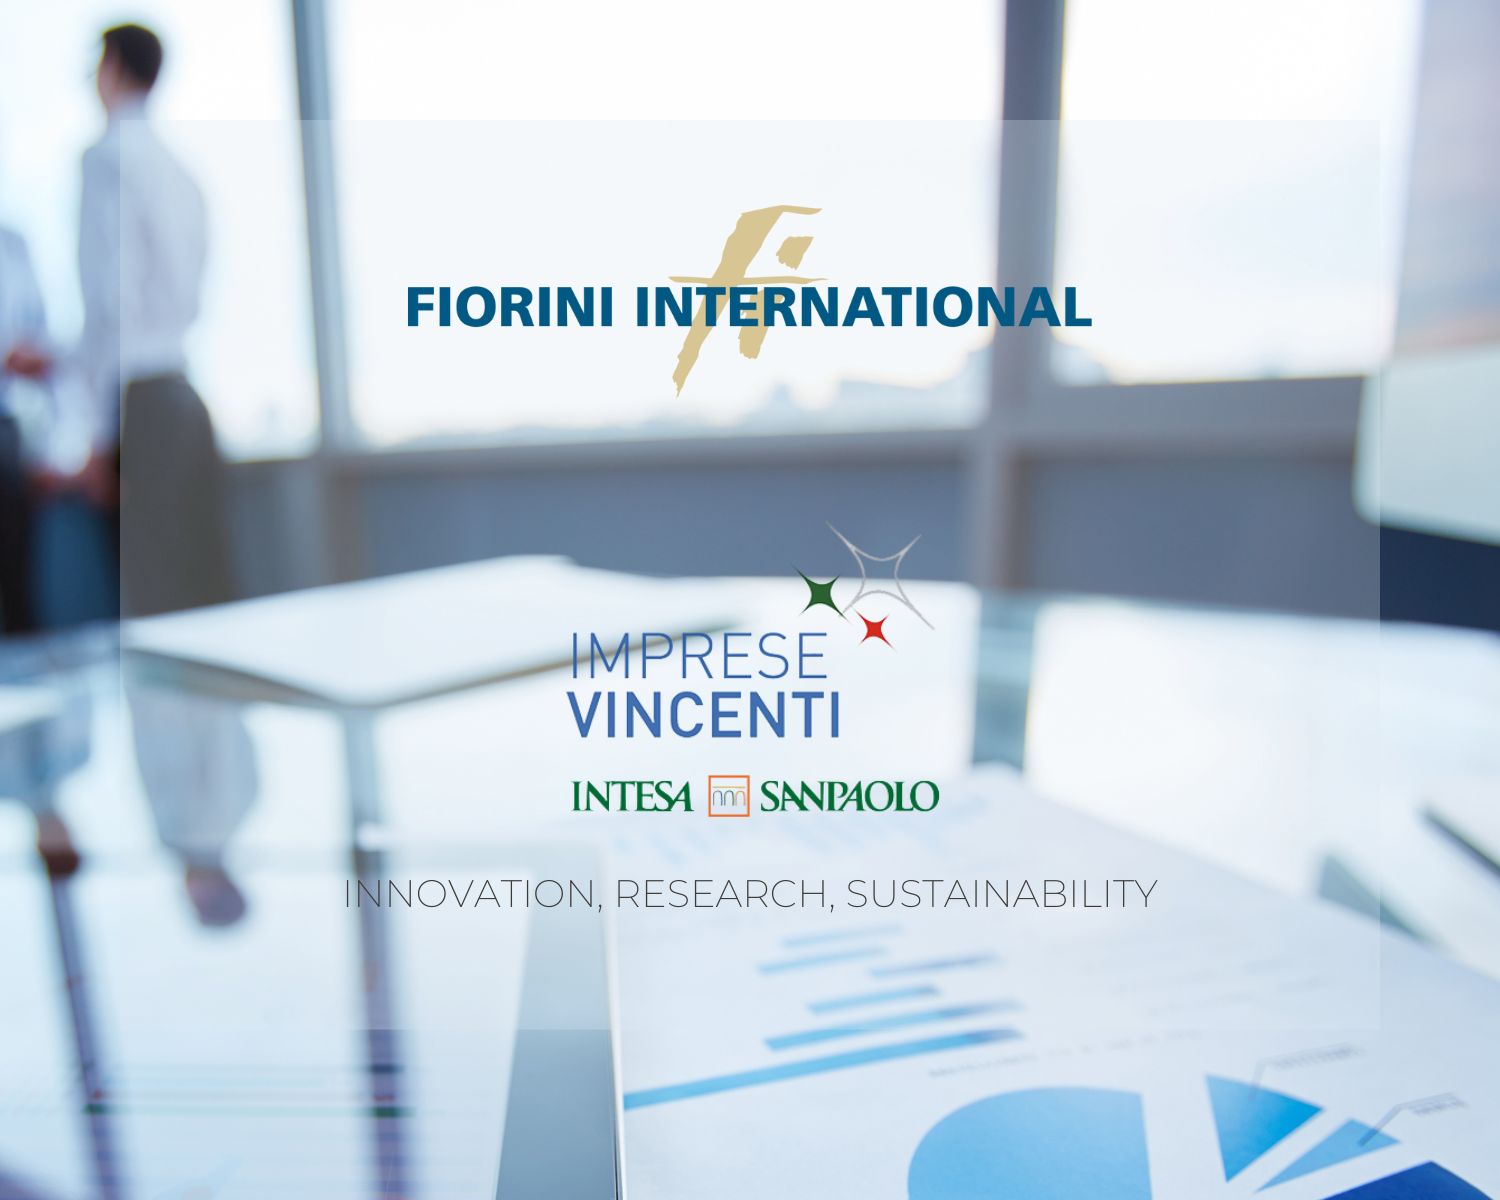 Innovazione, sostenibilità, ricerca, competitività: i fattori chiave di Fiorini International, premiata Imprese Vincenti 2022.